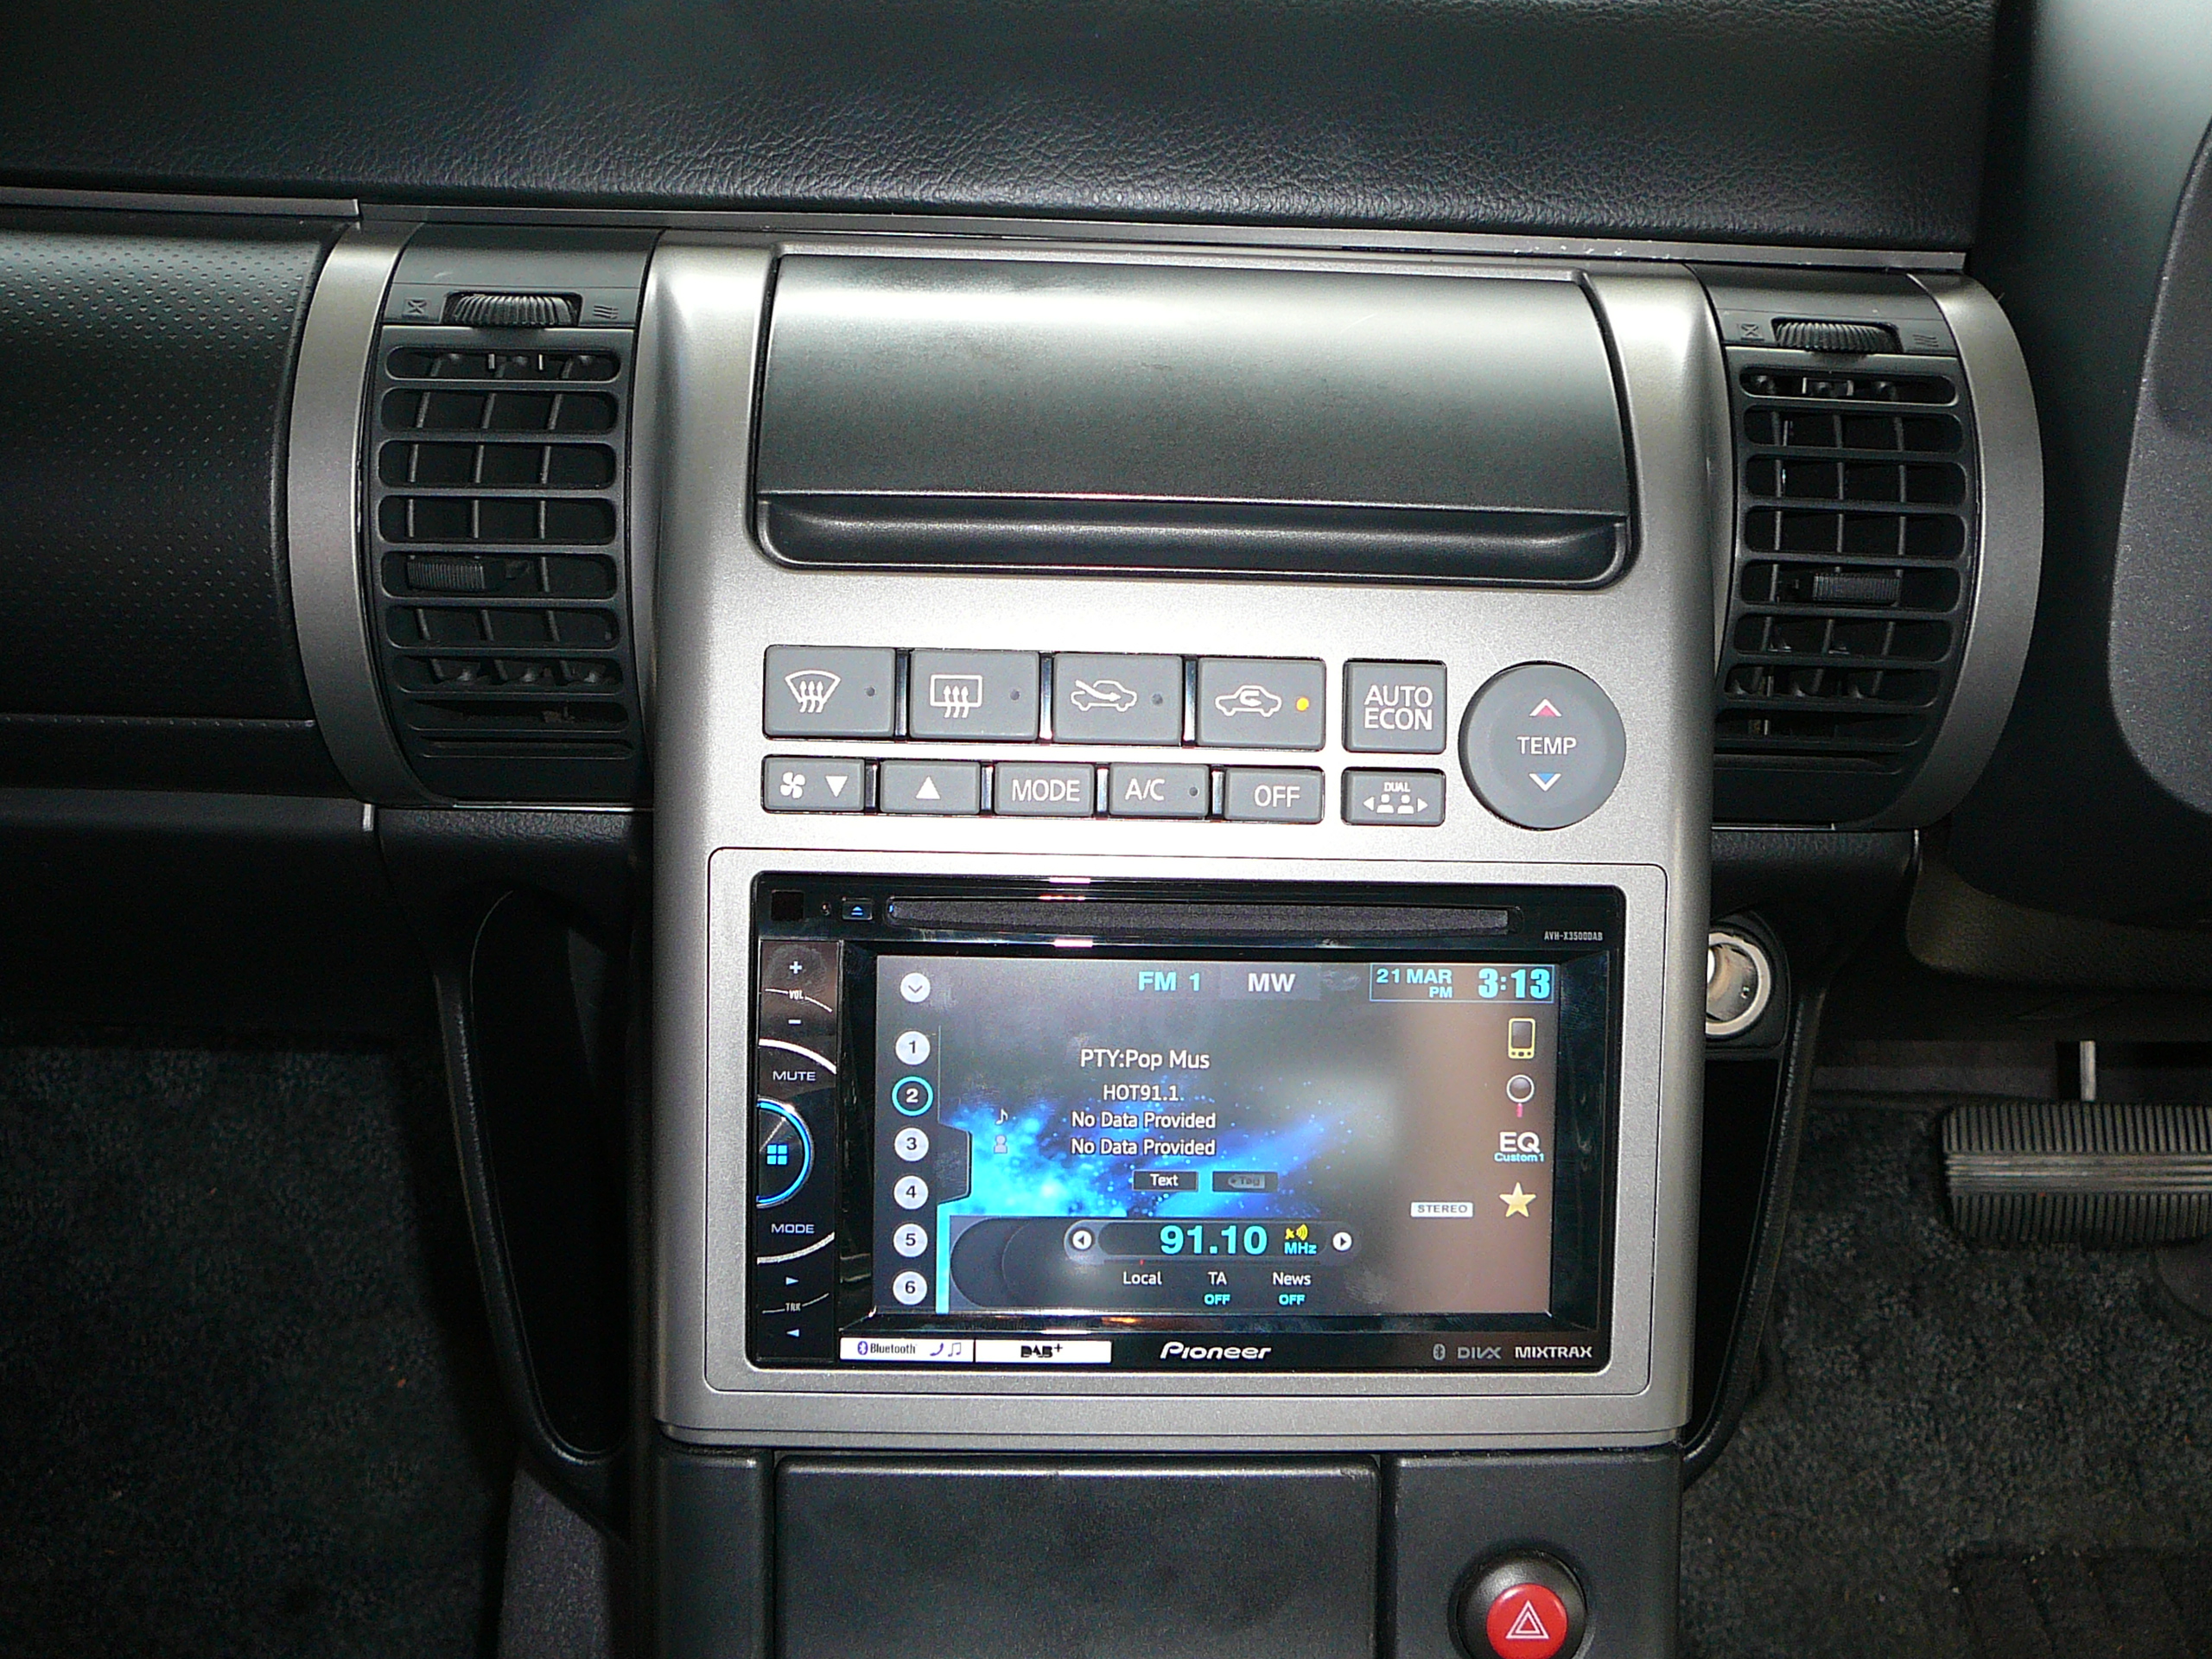 Nissan Skyline V35, Pioneer Audio Visual Unit